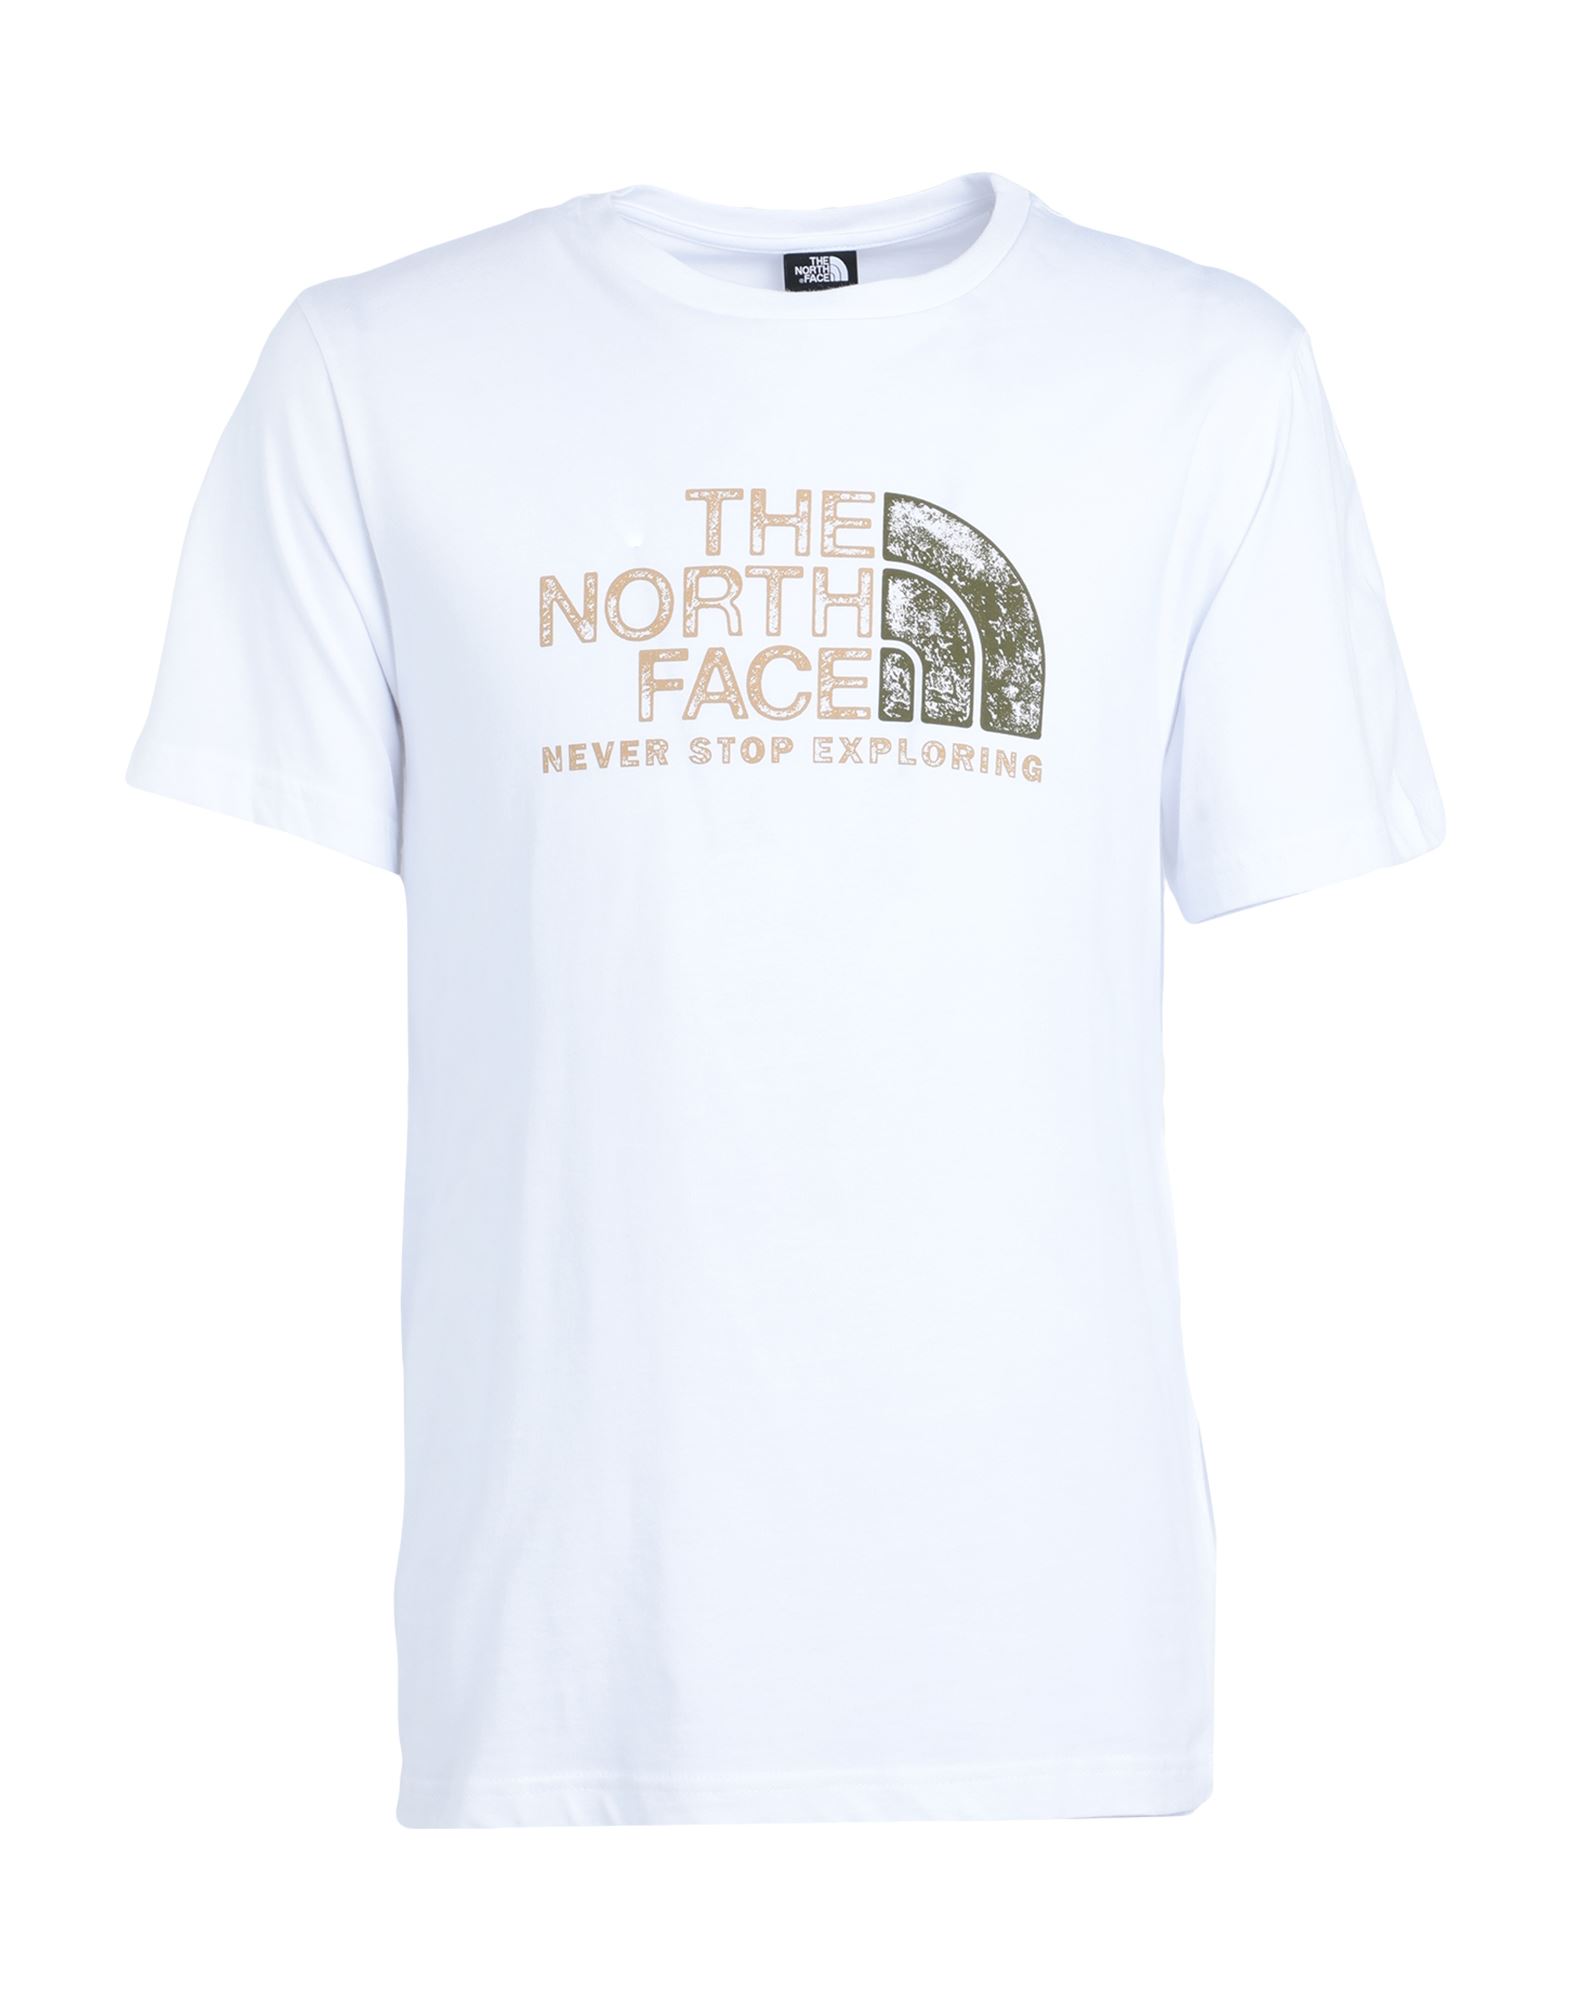 THE NORTH FACE T-shirts Herren Weiß von THE NORTH FACE